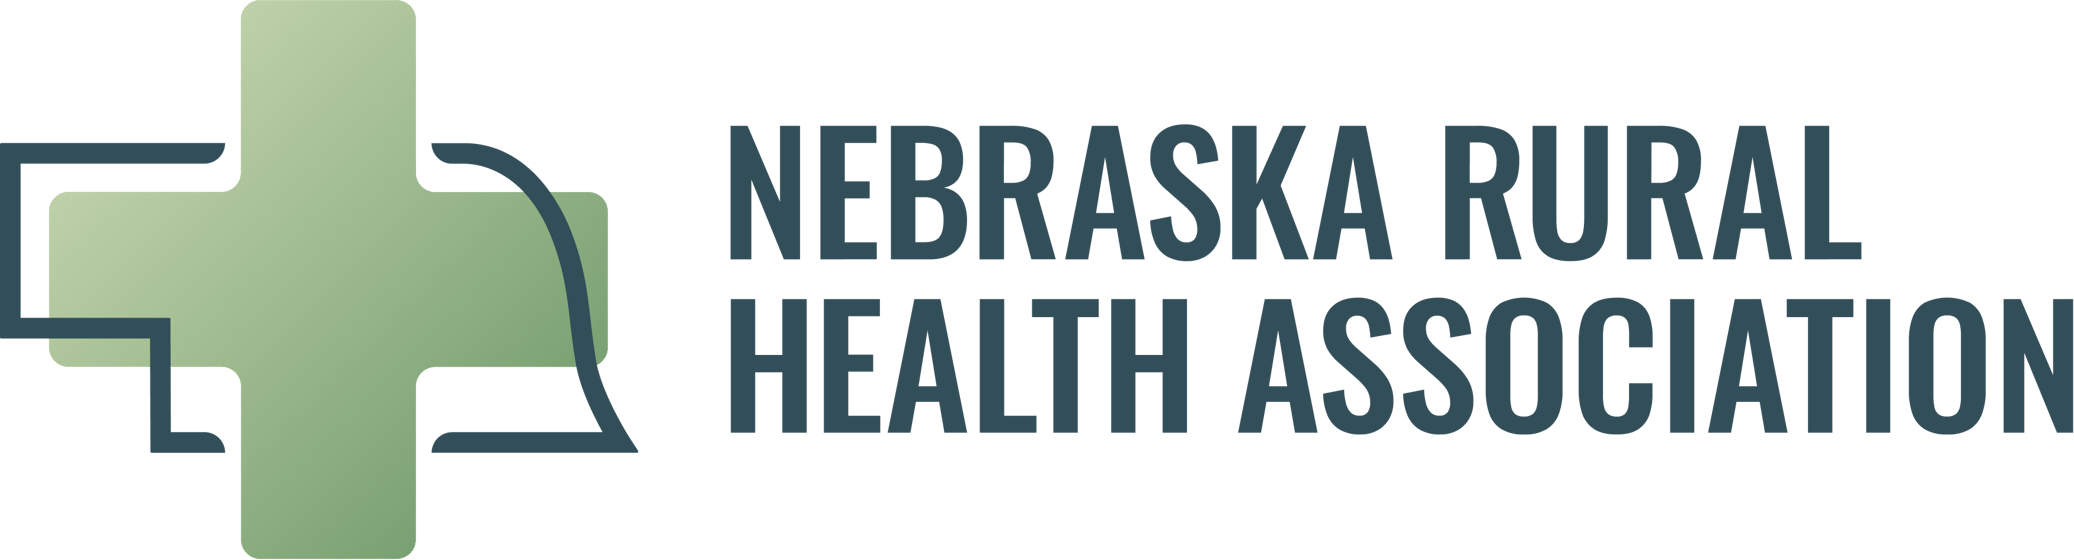 Nebraska Rural Health Association